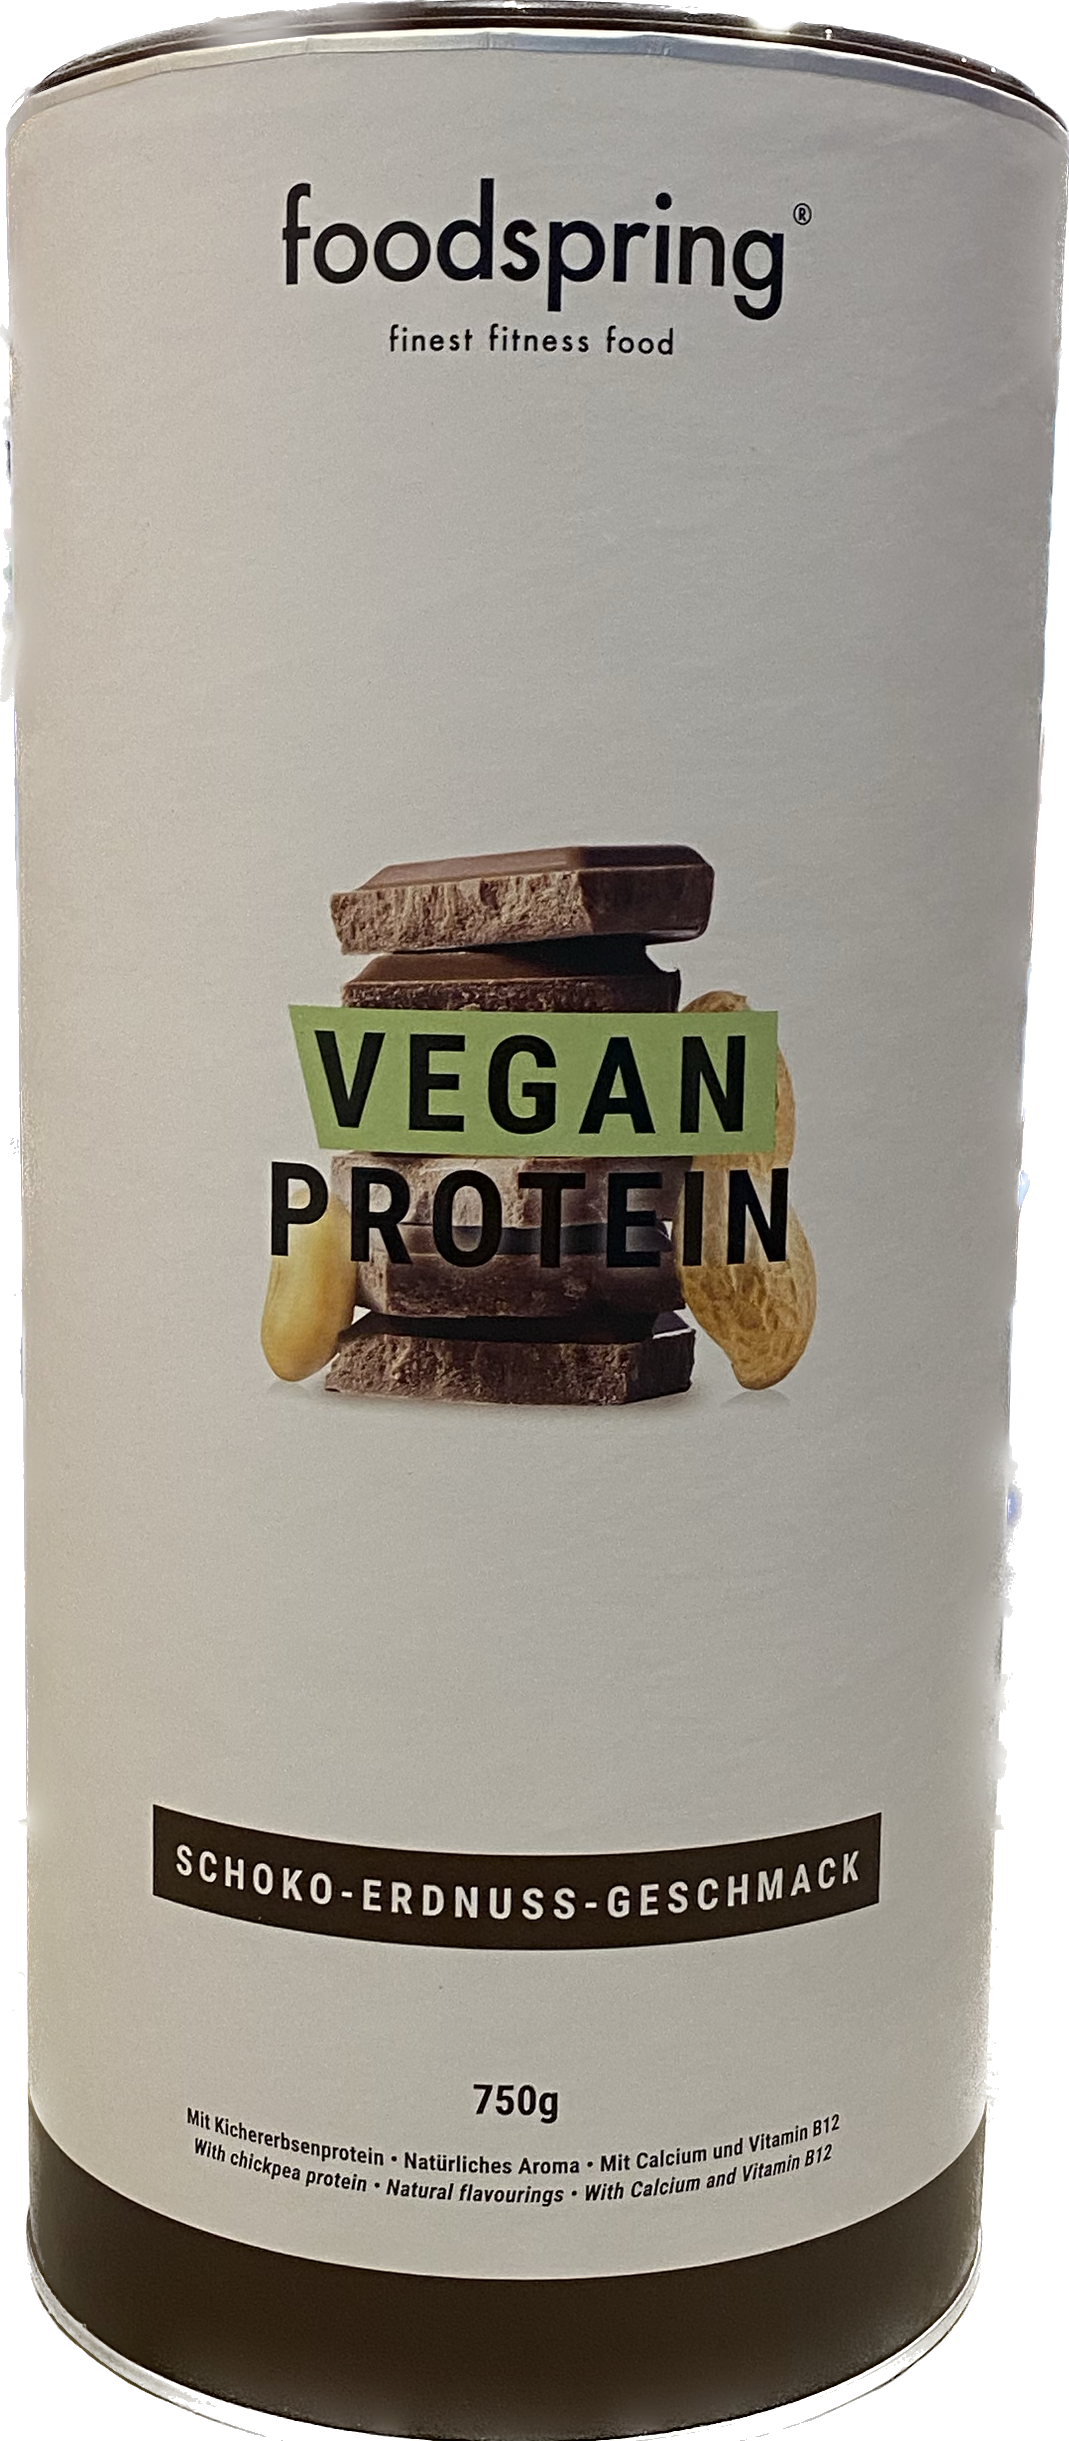 Foodspring - Vegan Protein Burro di Arachidi e Cioccolato 750g